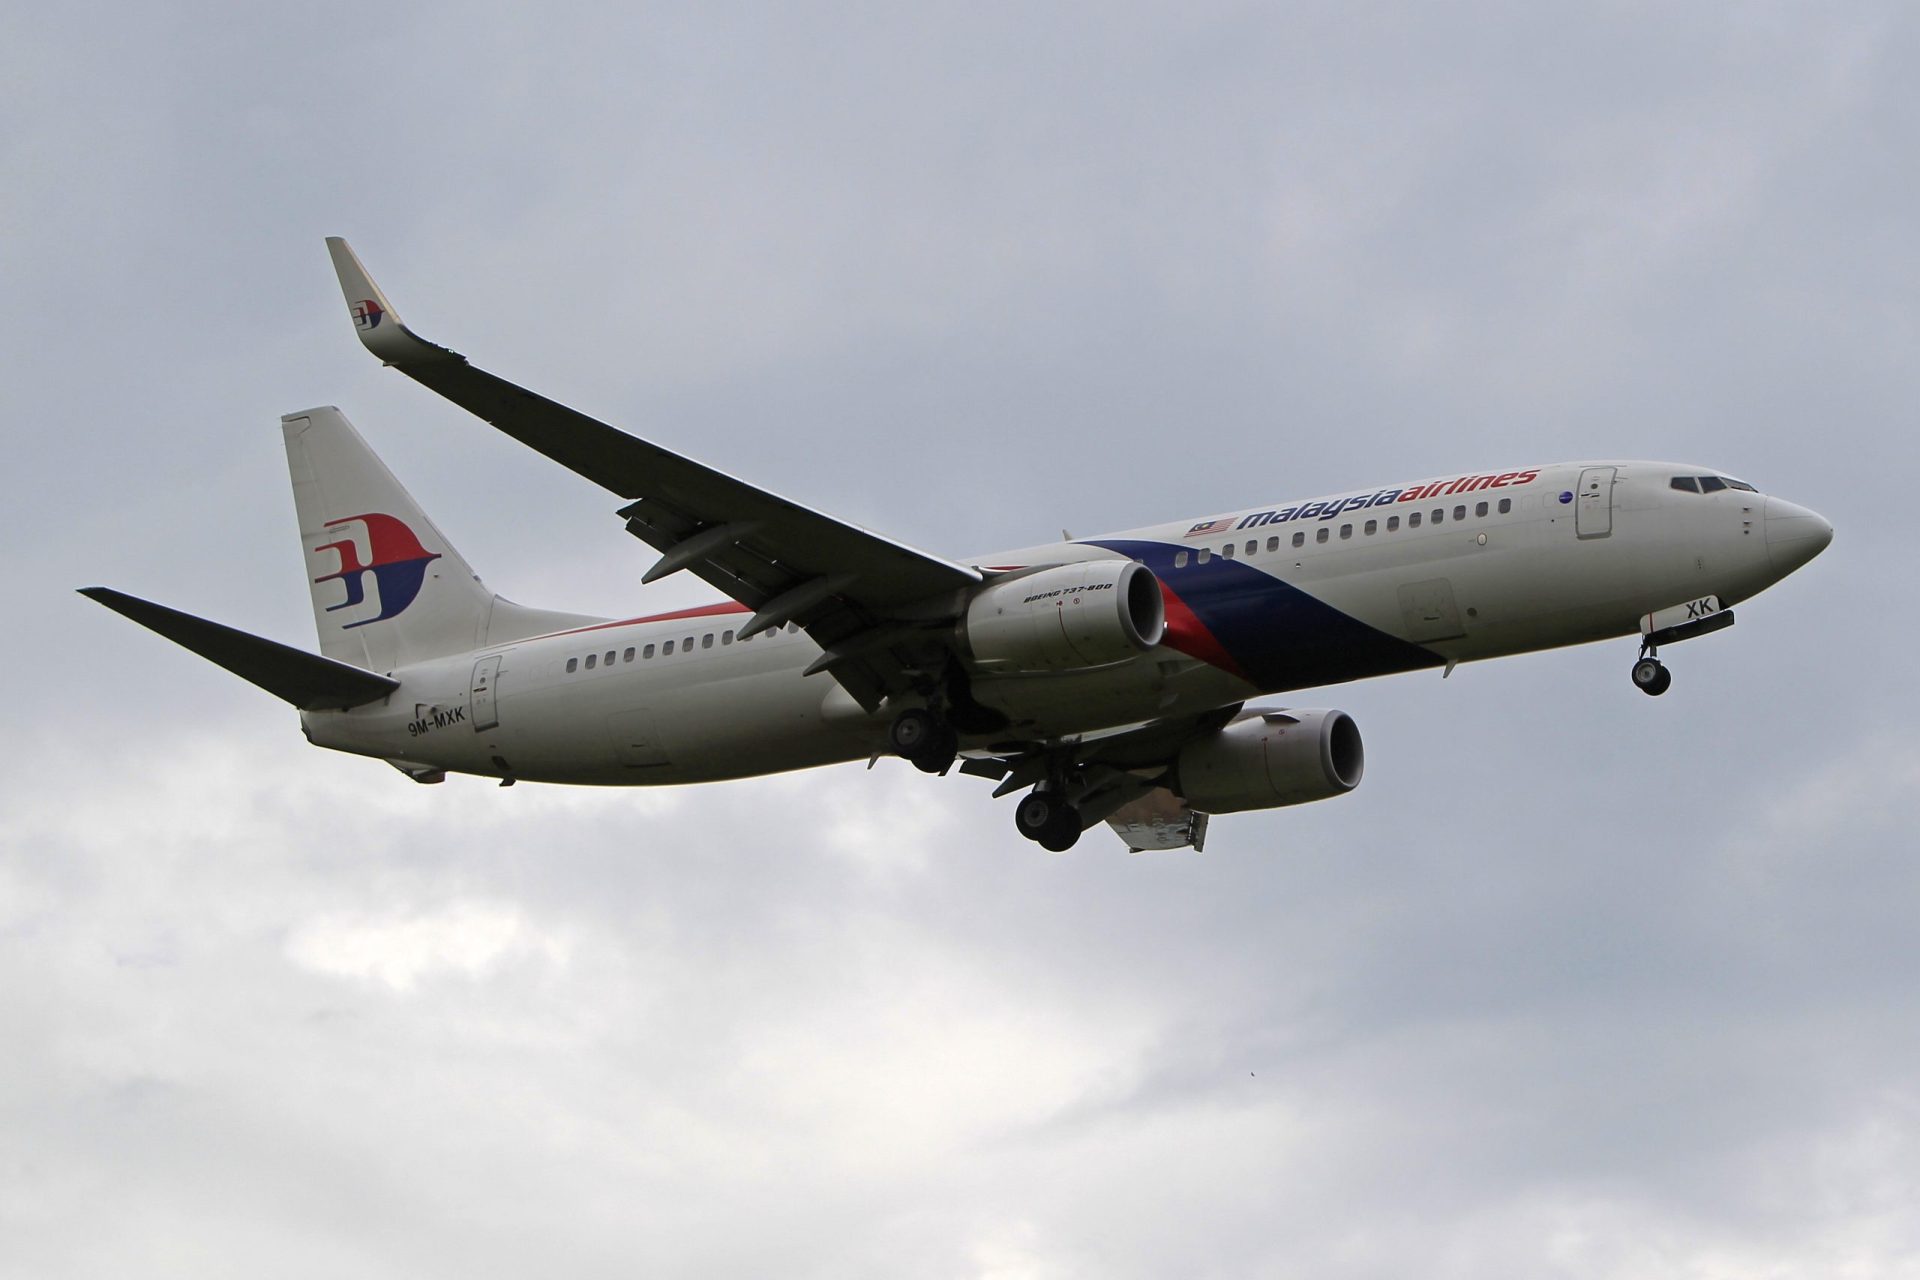 Malaysia Airlines envia cartas de despedimento a 20.000 funcionários